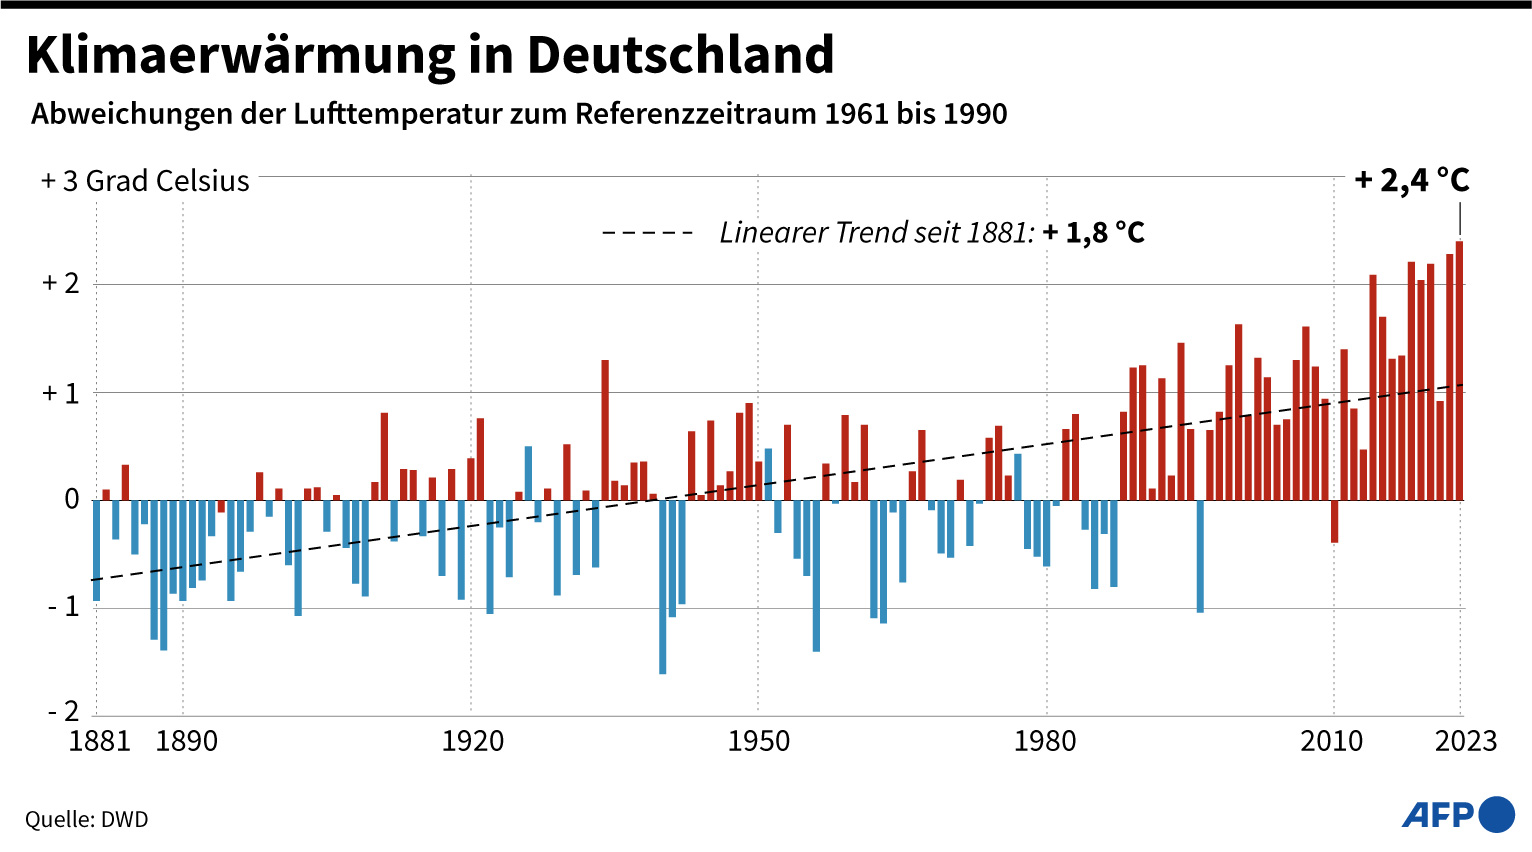 nein, hohe temperaturen im jahr 1974 widerlegen nicht den klimawandel